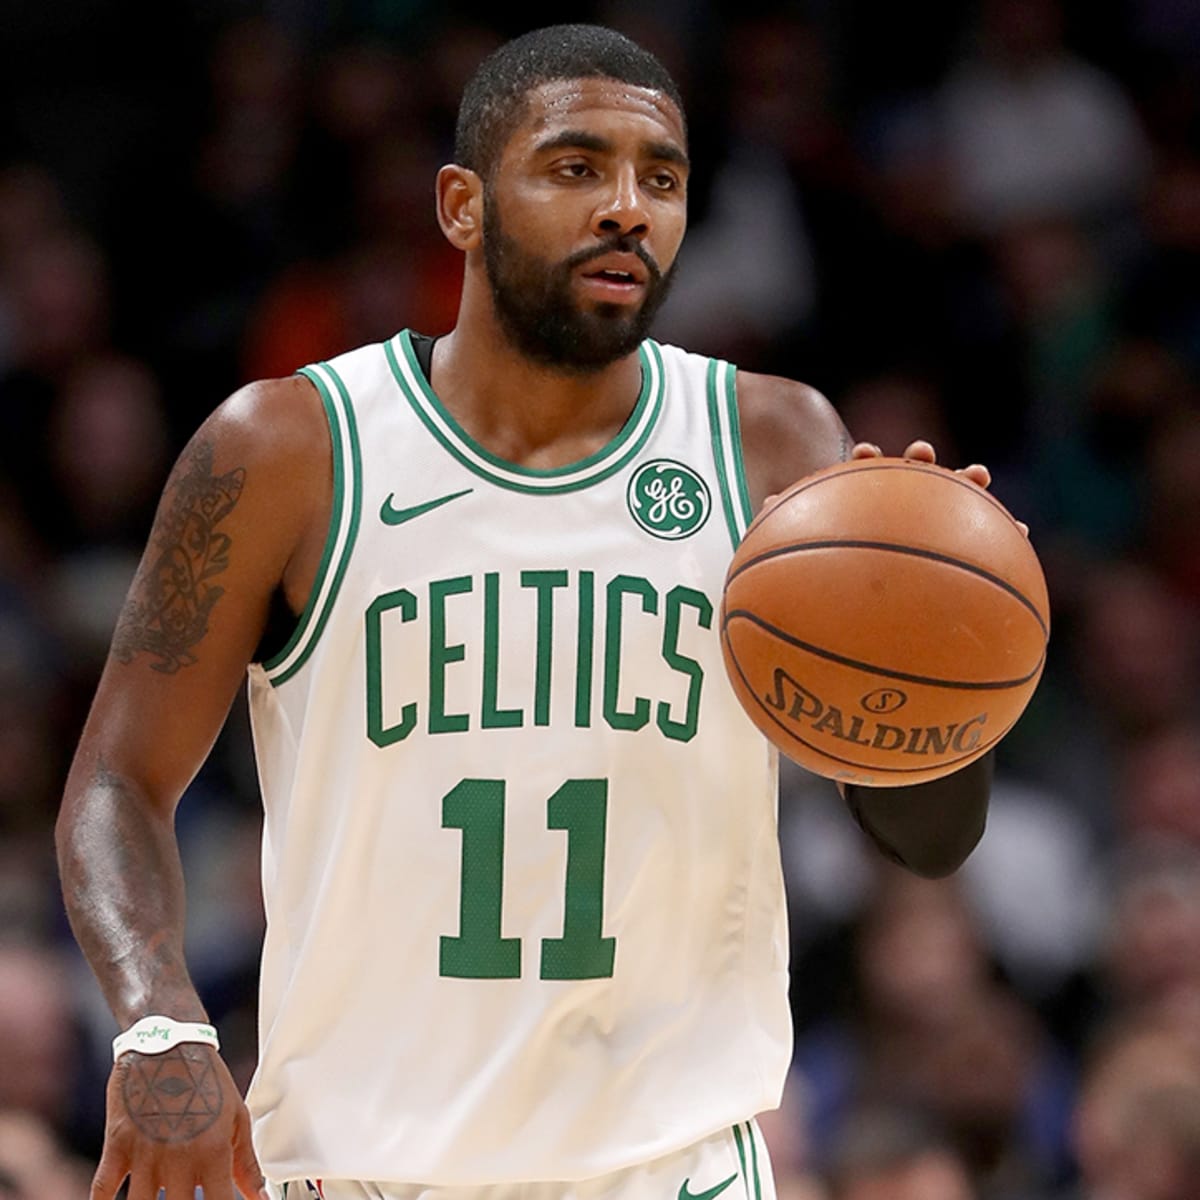 Gordon Hayward: Celtics star has found rhythm in NBA playoffs